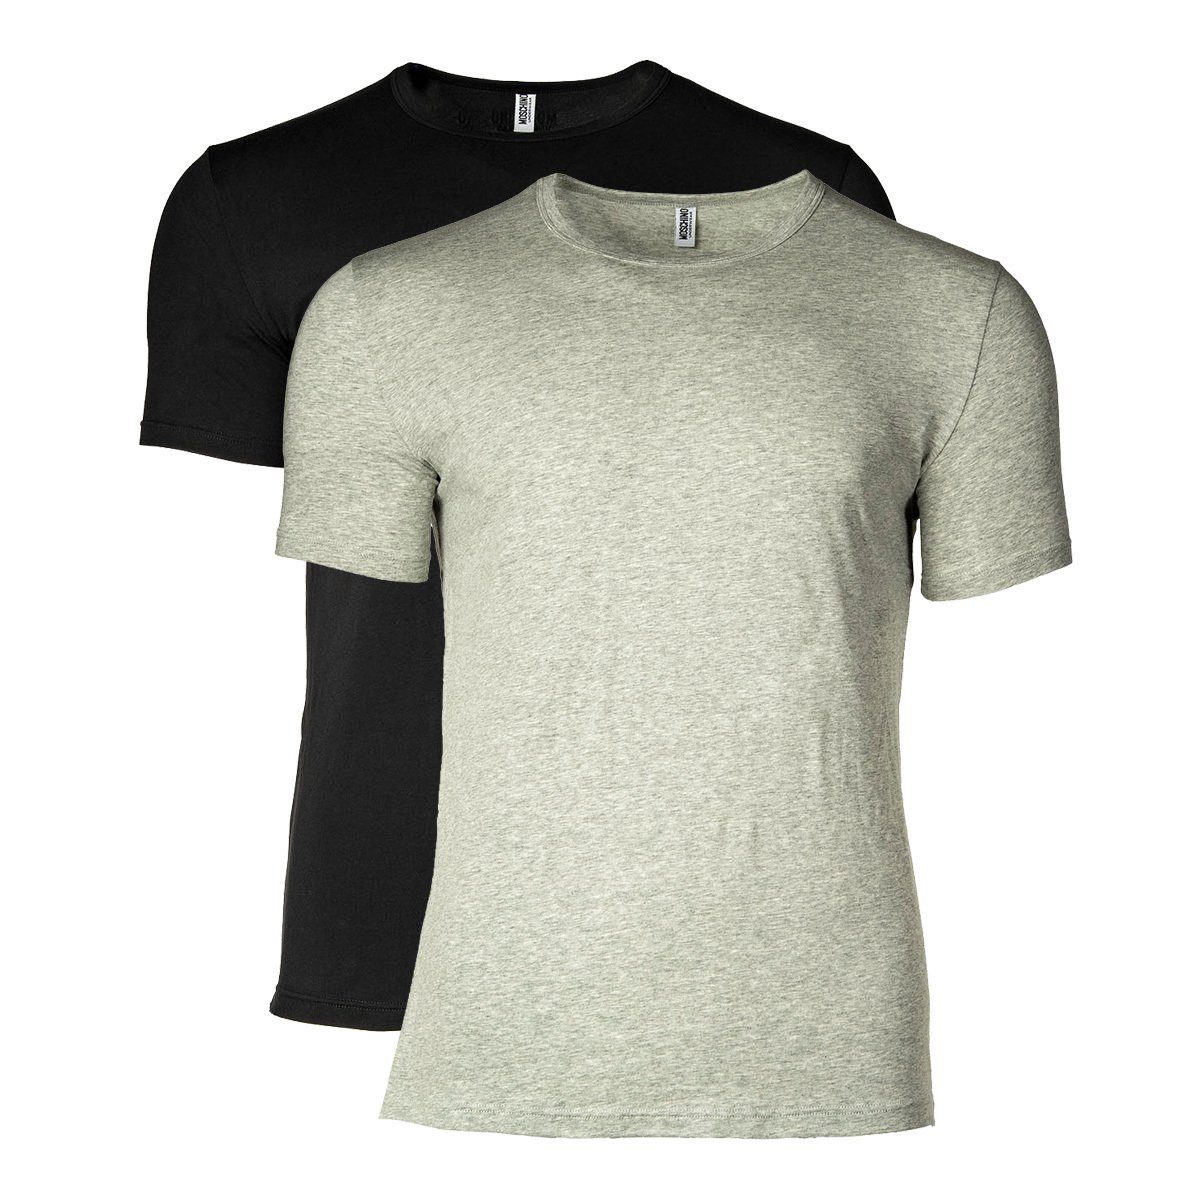 Moschino T-Shirt Herren T-Shirt 2er Rundhals Crew Neck, Pack - Schwarz/Grau